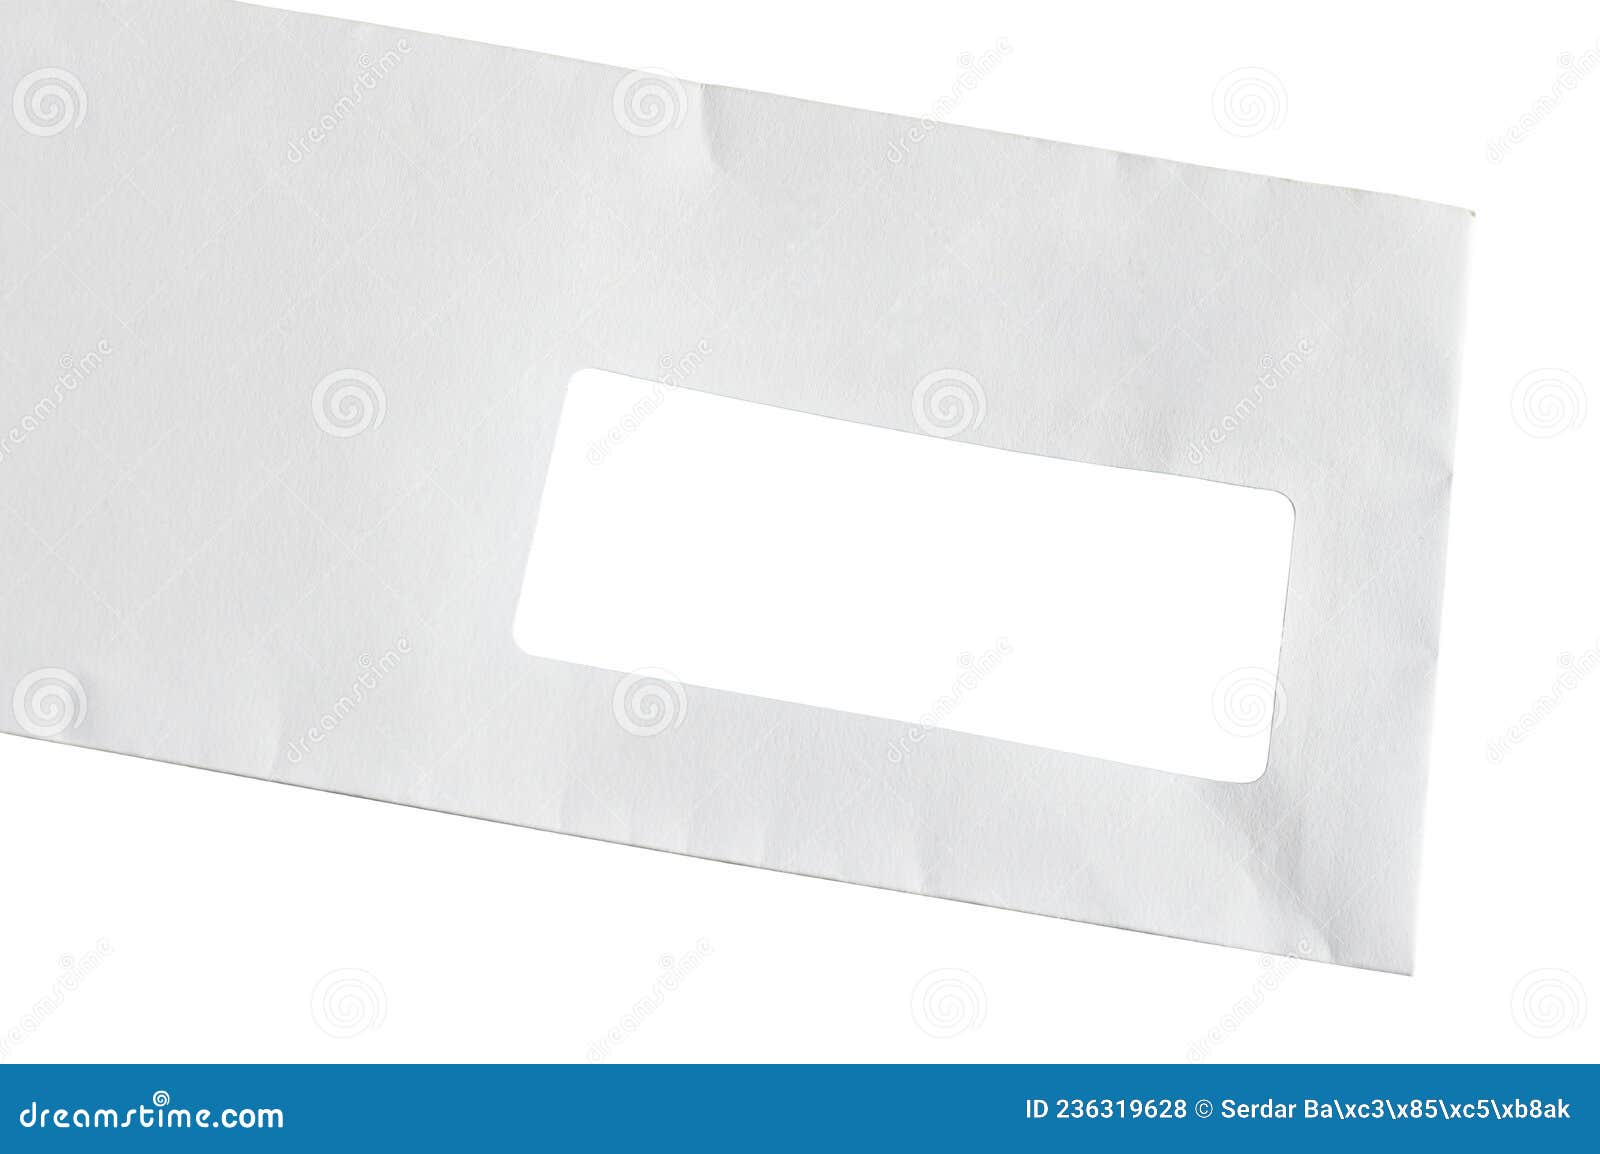 Enveloppe Rectangle De Courrier De Papier Blanc Avec Fenêtre D'adresse Sur  Fond Blanc Photo stock - Image du grunge, enveloppe: 236319628